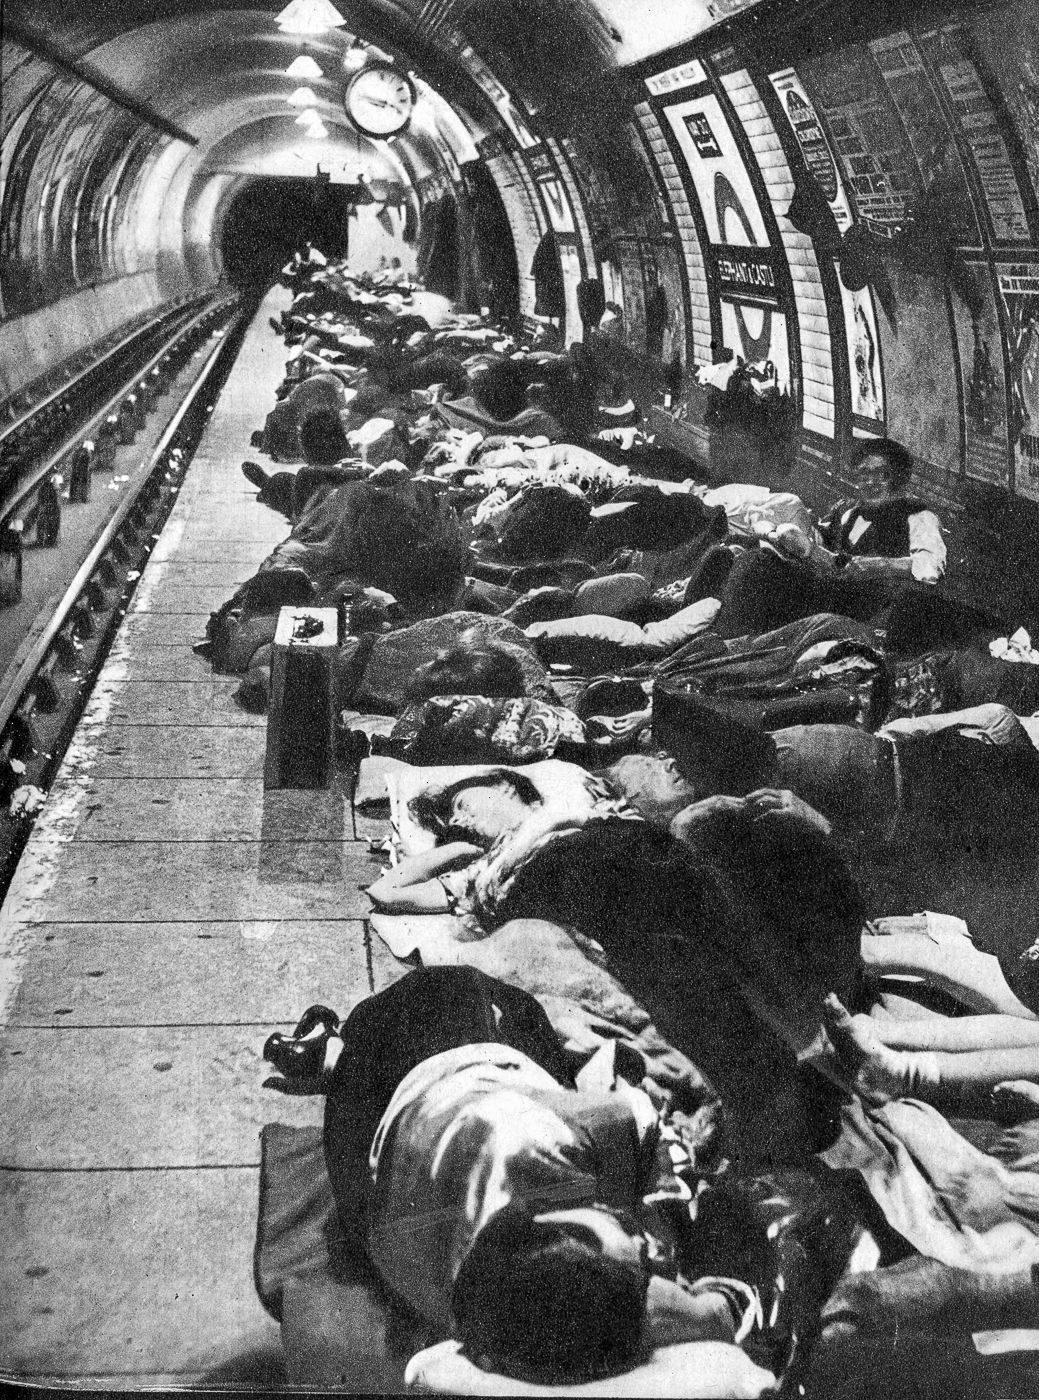 Les Citoyens de Londres dormant dans une station de métro durant les bombardements allemands en septembre 1940